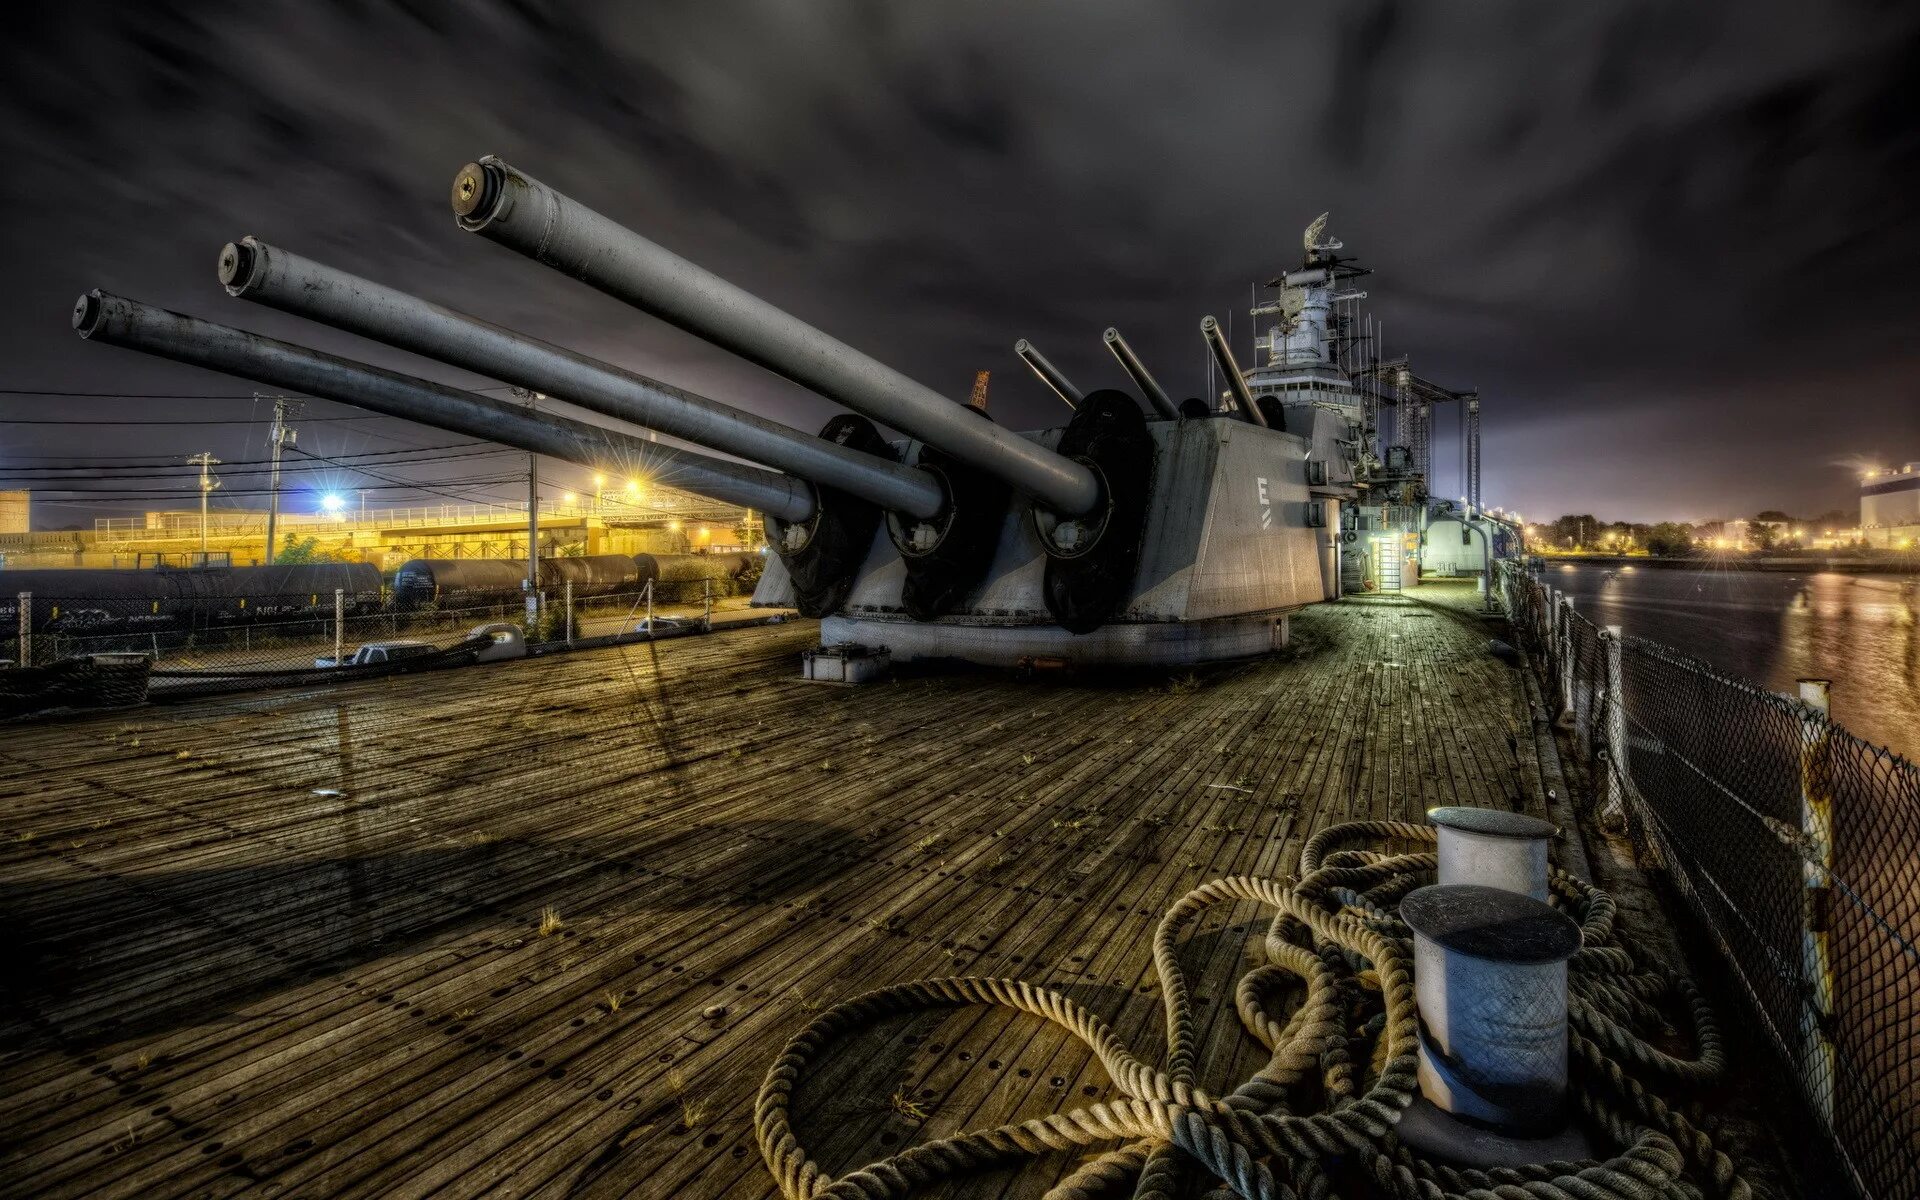 Палуба военного корабля. Военный корабль с пушками. Пушка на корабле. Пушки на военном корабле.